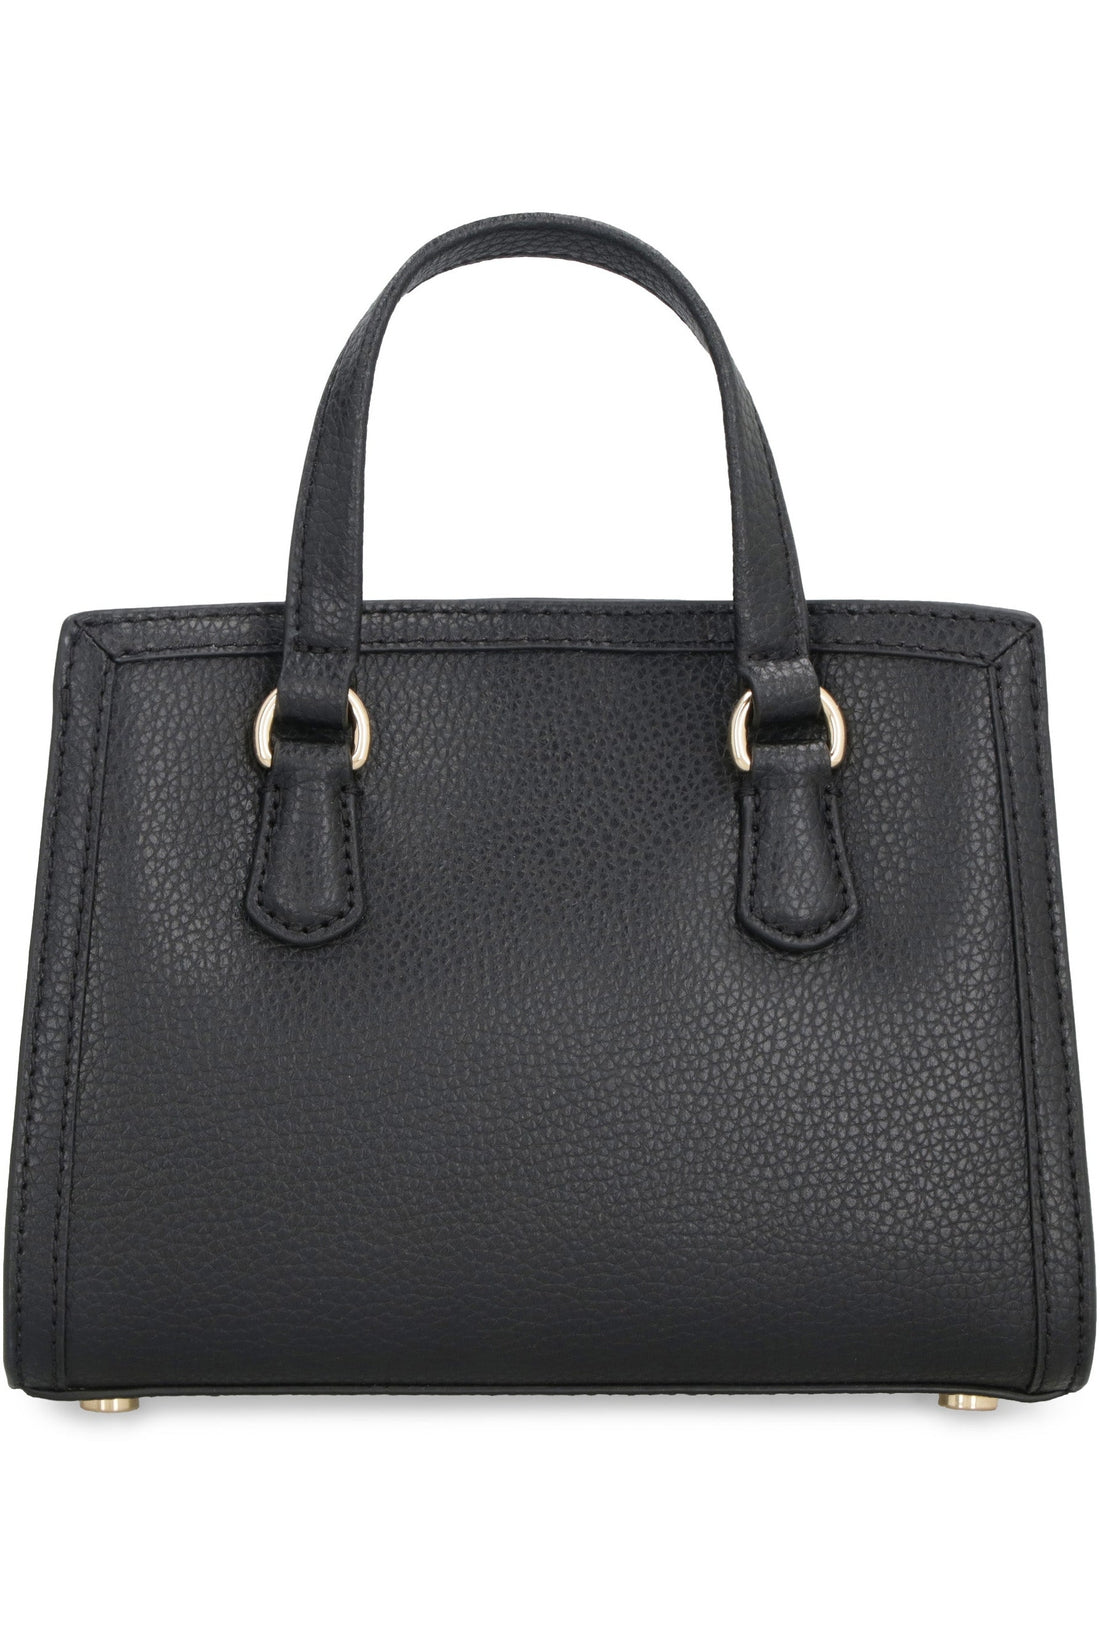 MICHAEL MICHAEL KORS-OUTLET-SALE-Chantal leather mini handbag-ARCHIVIST